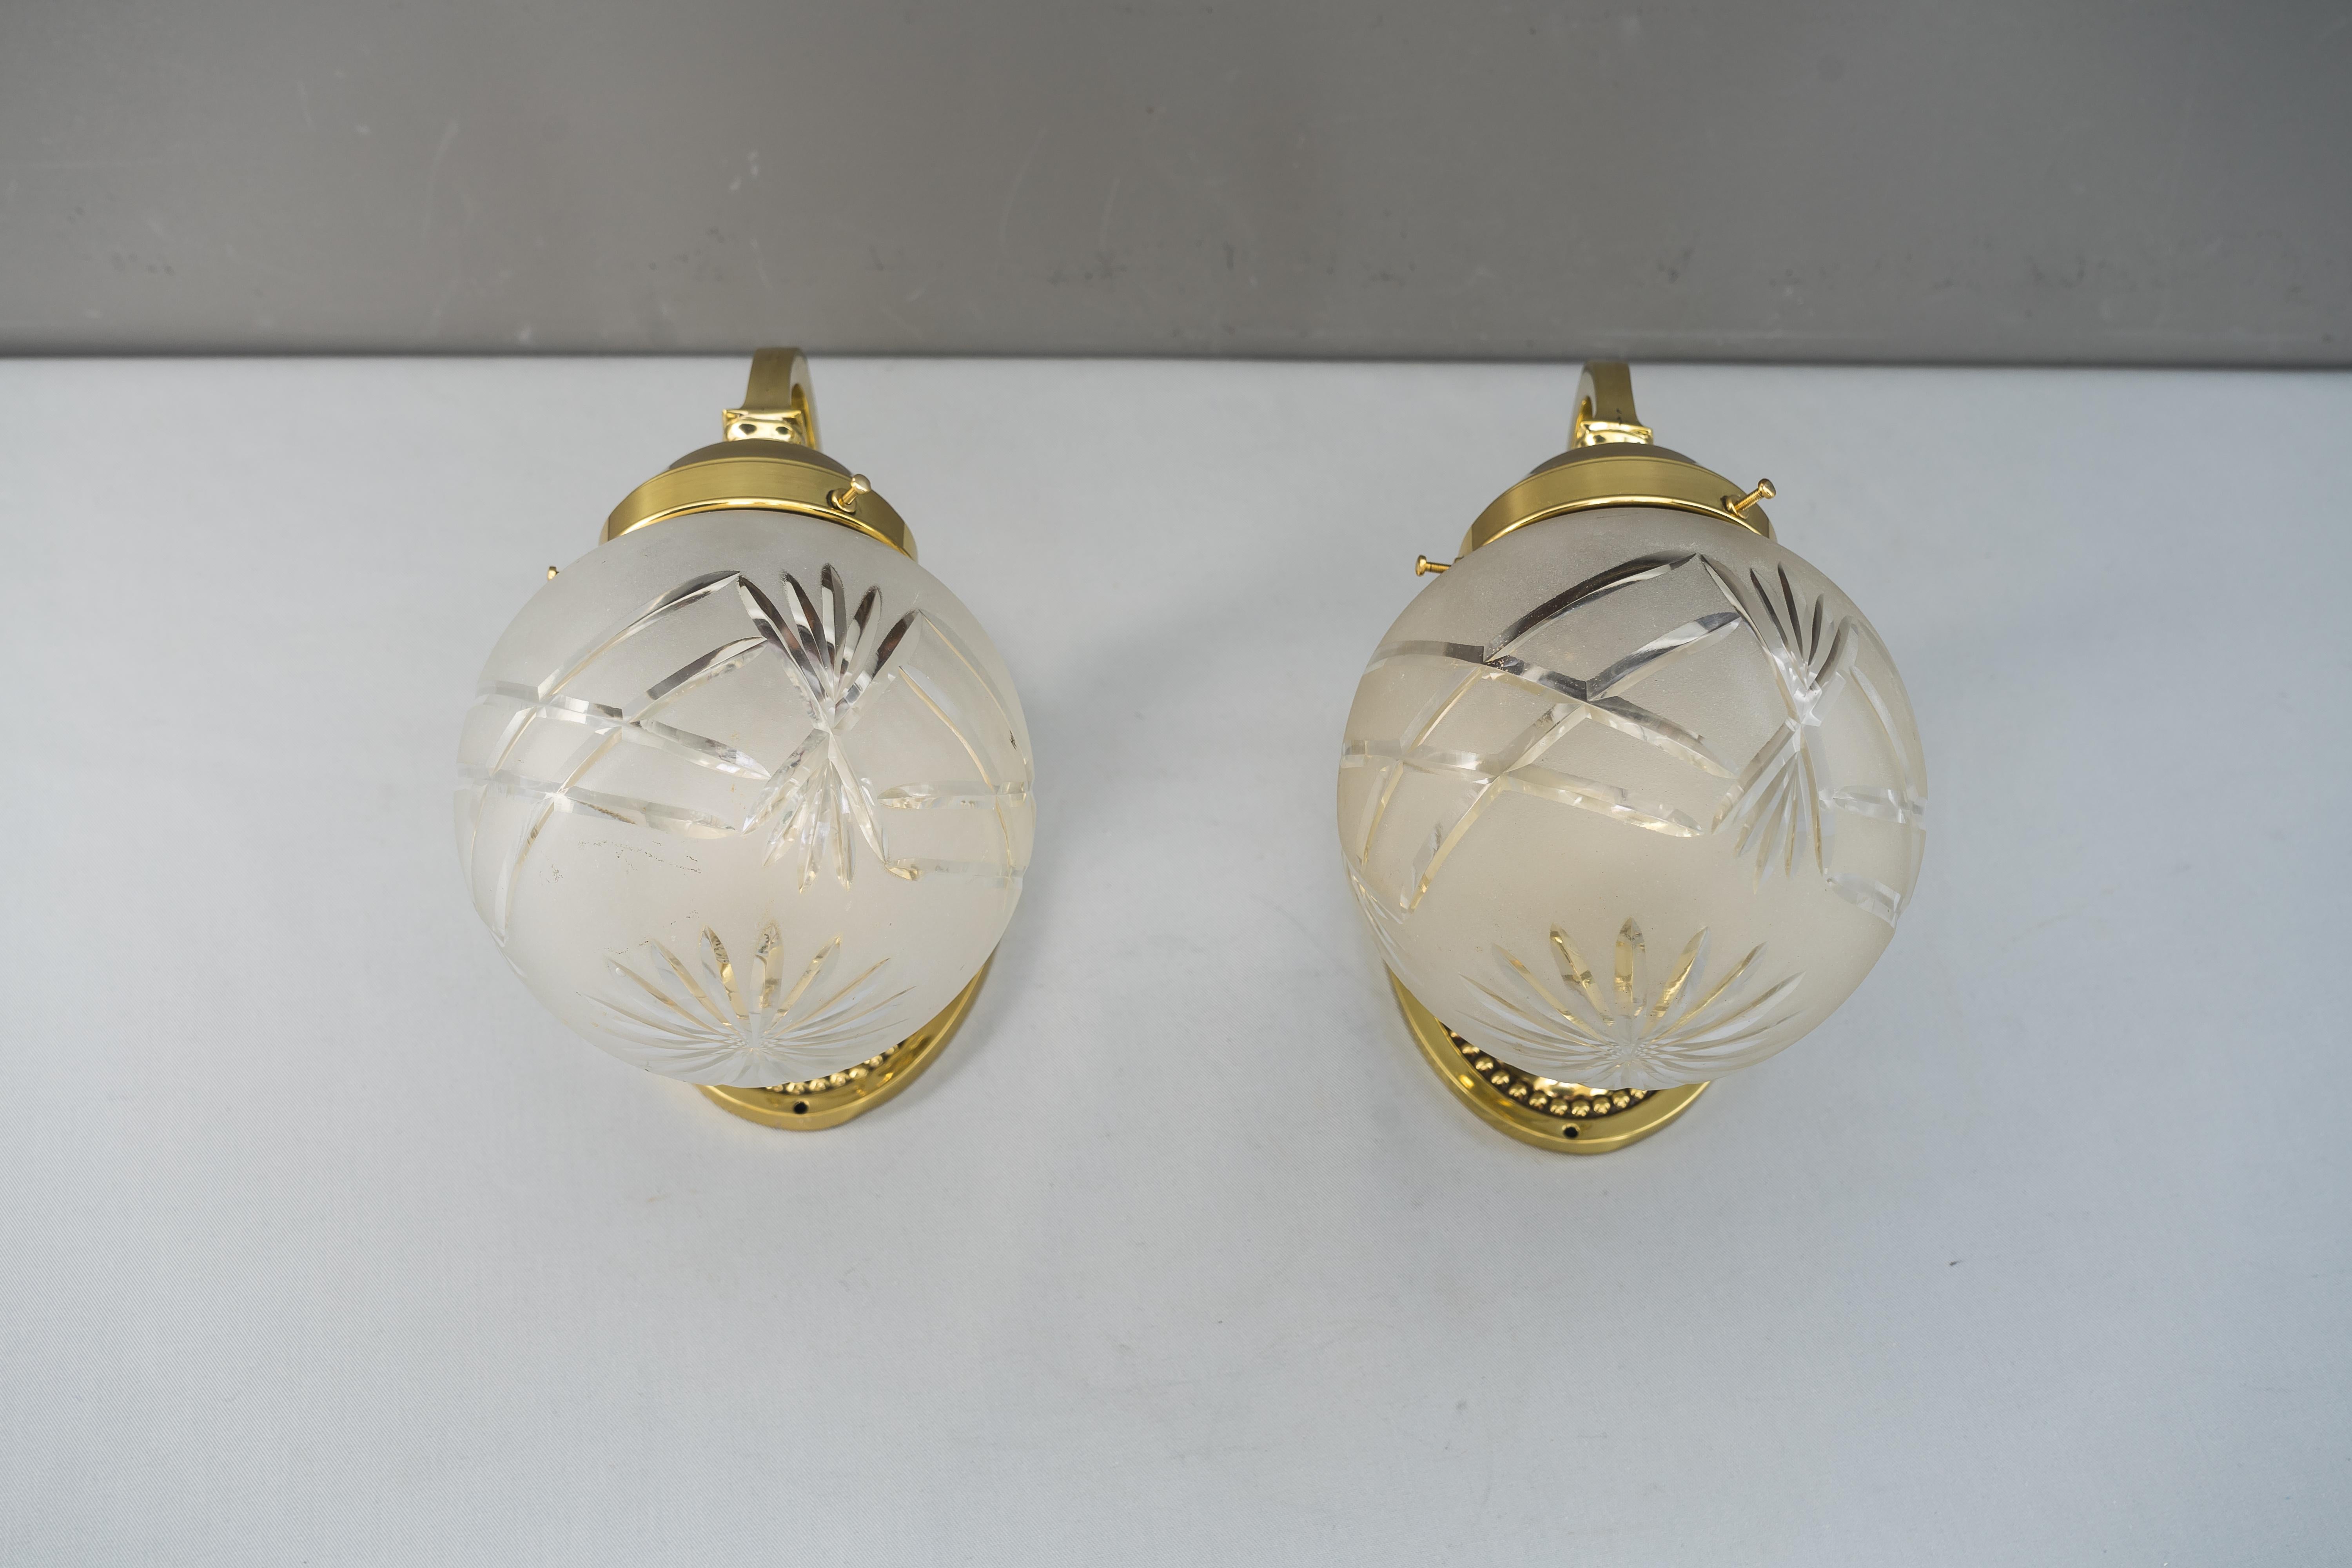 Zwei historistische Wandlampen, ca. 1890er Jahre
Poliert und emailliert
Original geschliffene Gläser.